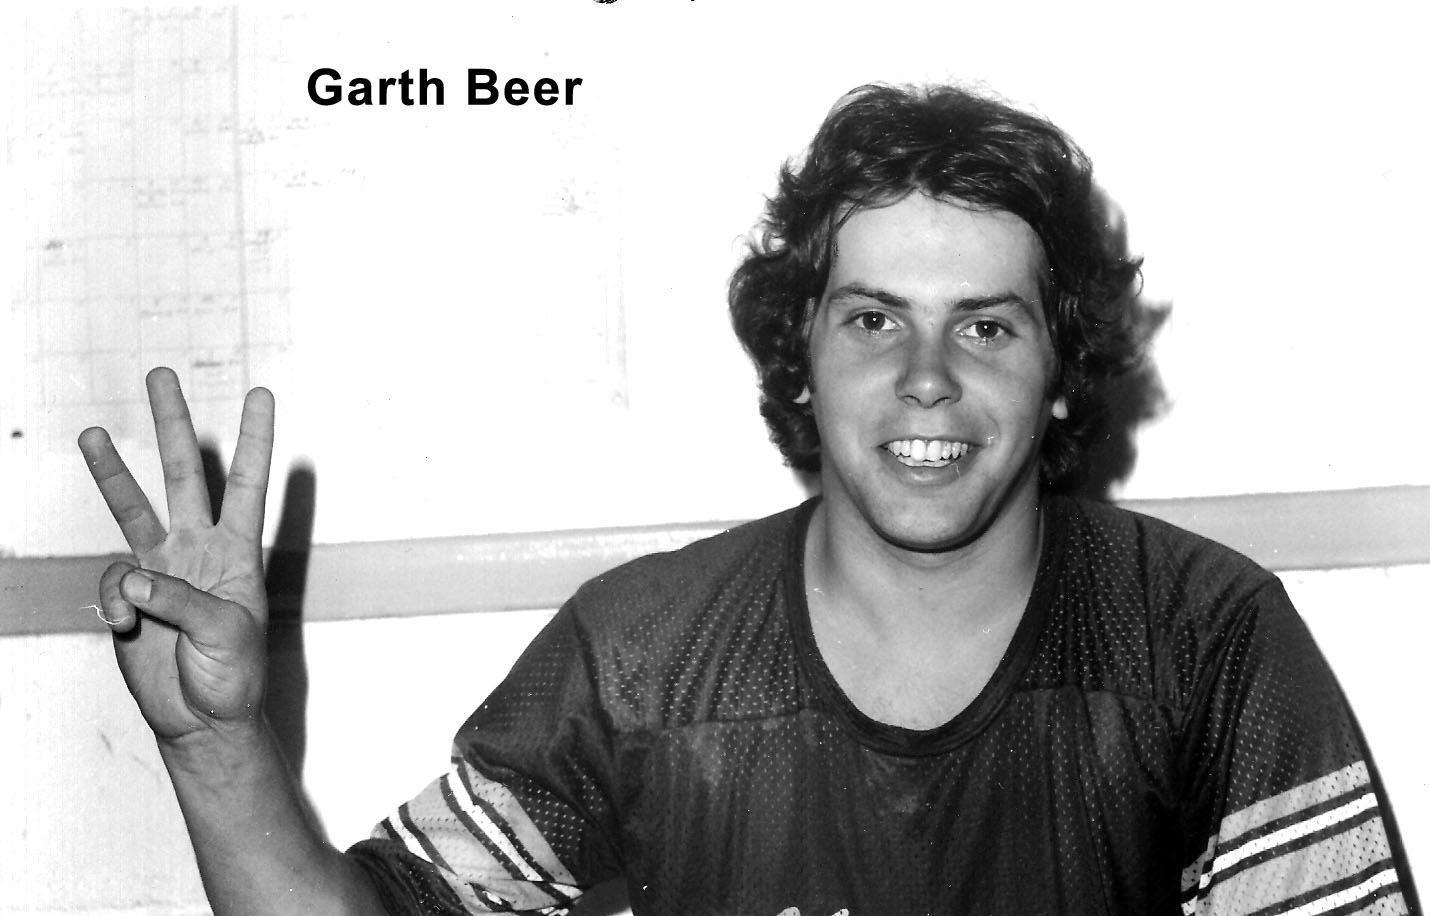 Garth Beer